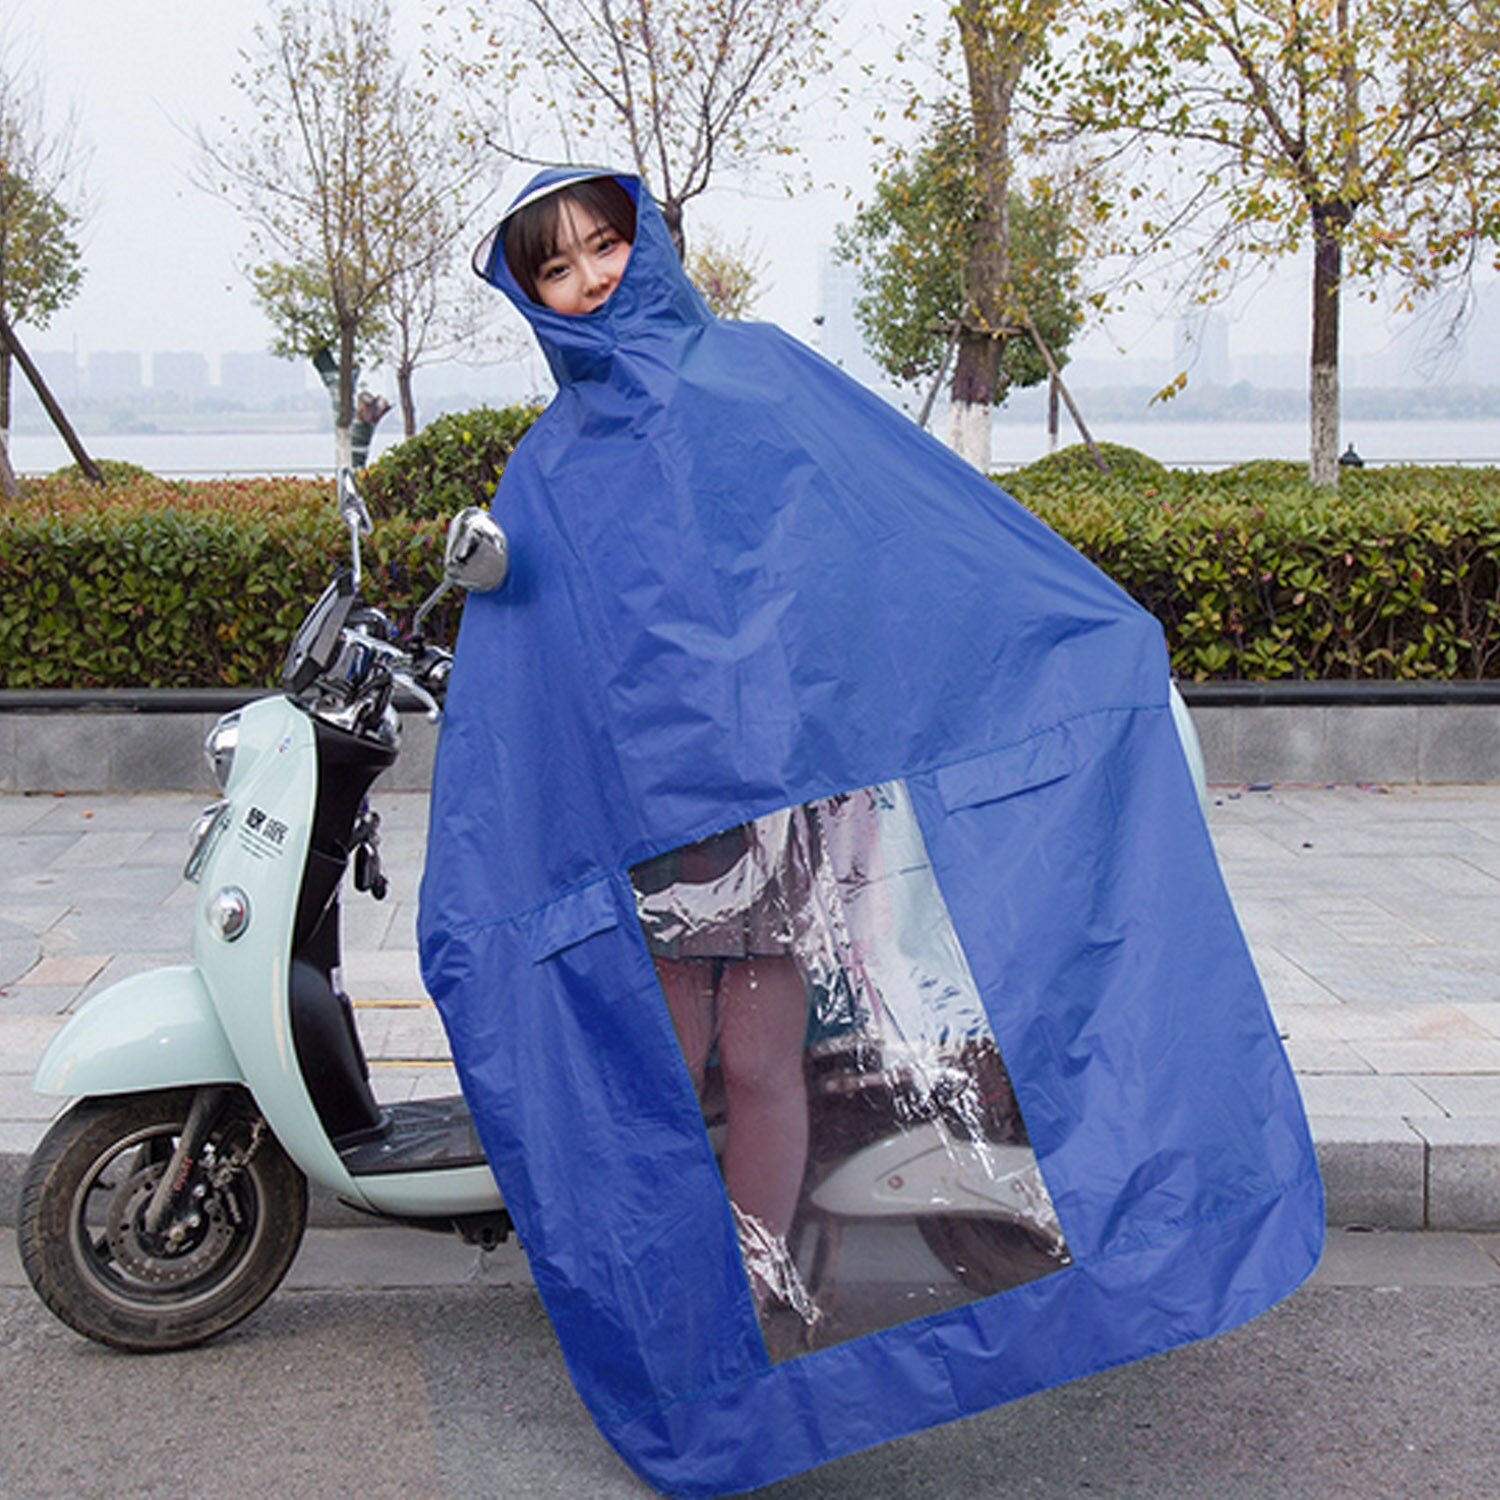 Behogar universal vandtæt hætteklædt regnfrakke regnkappe frakke poncho til mobilitet scootere motorcykel motorcykler blå